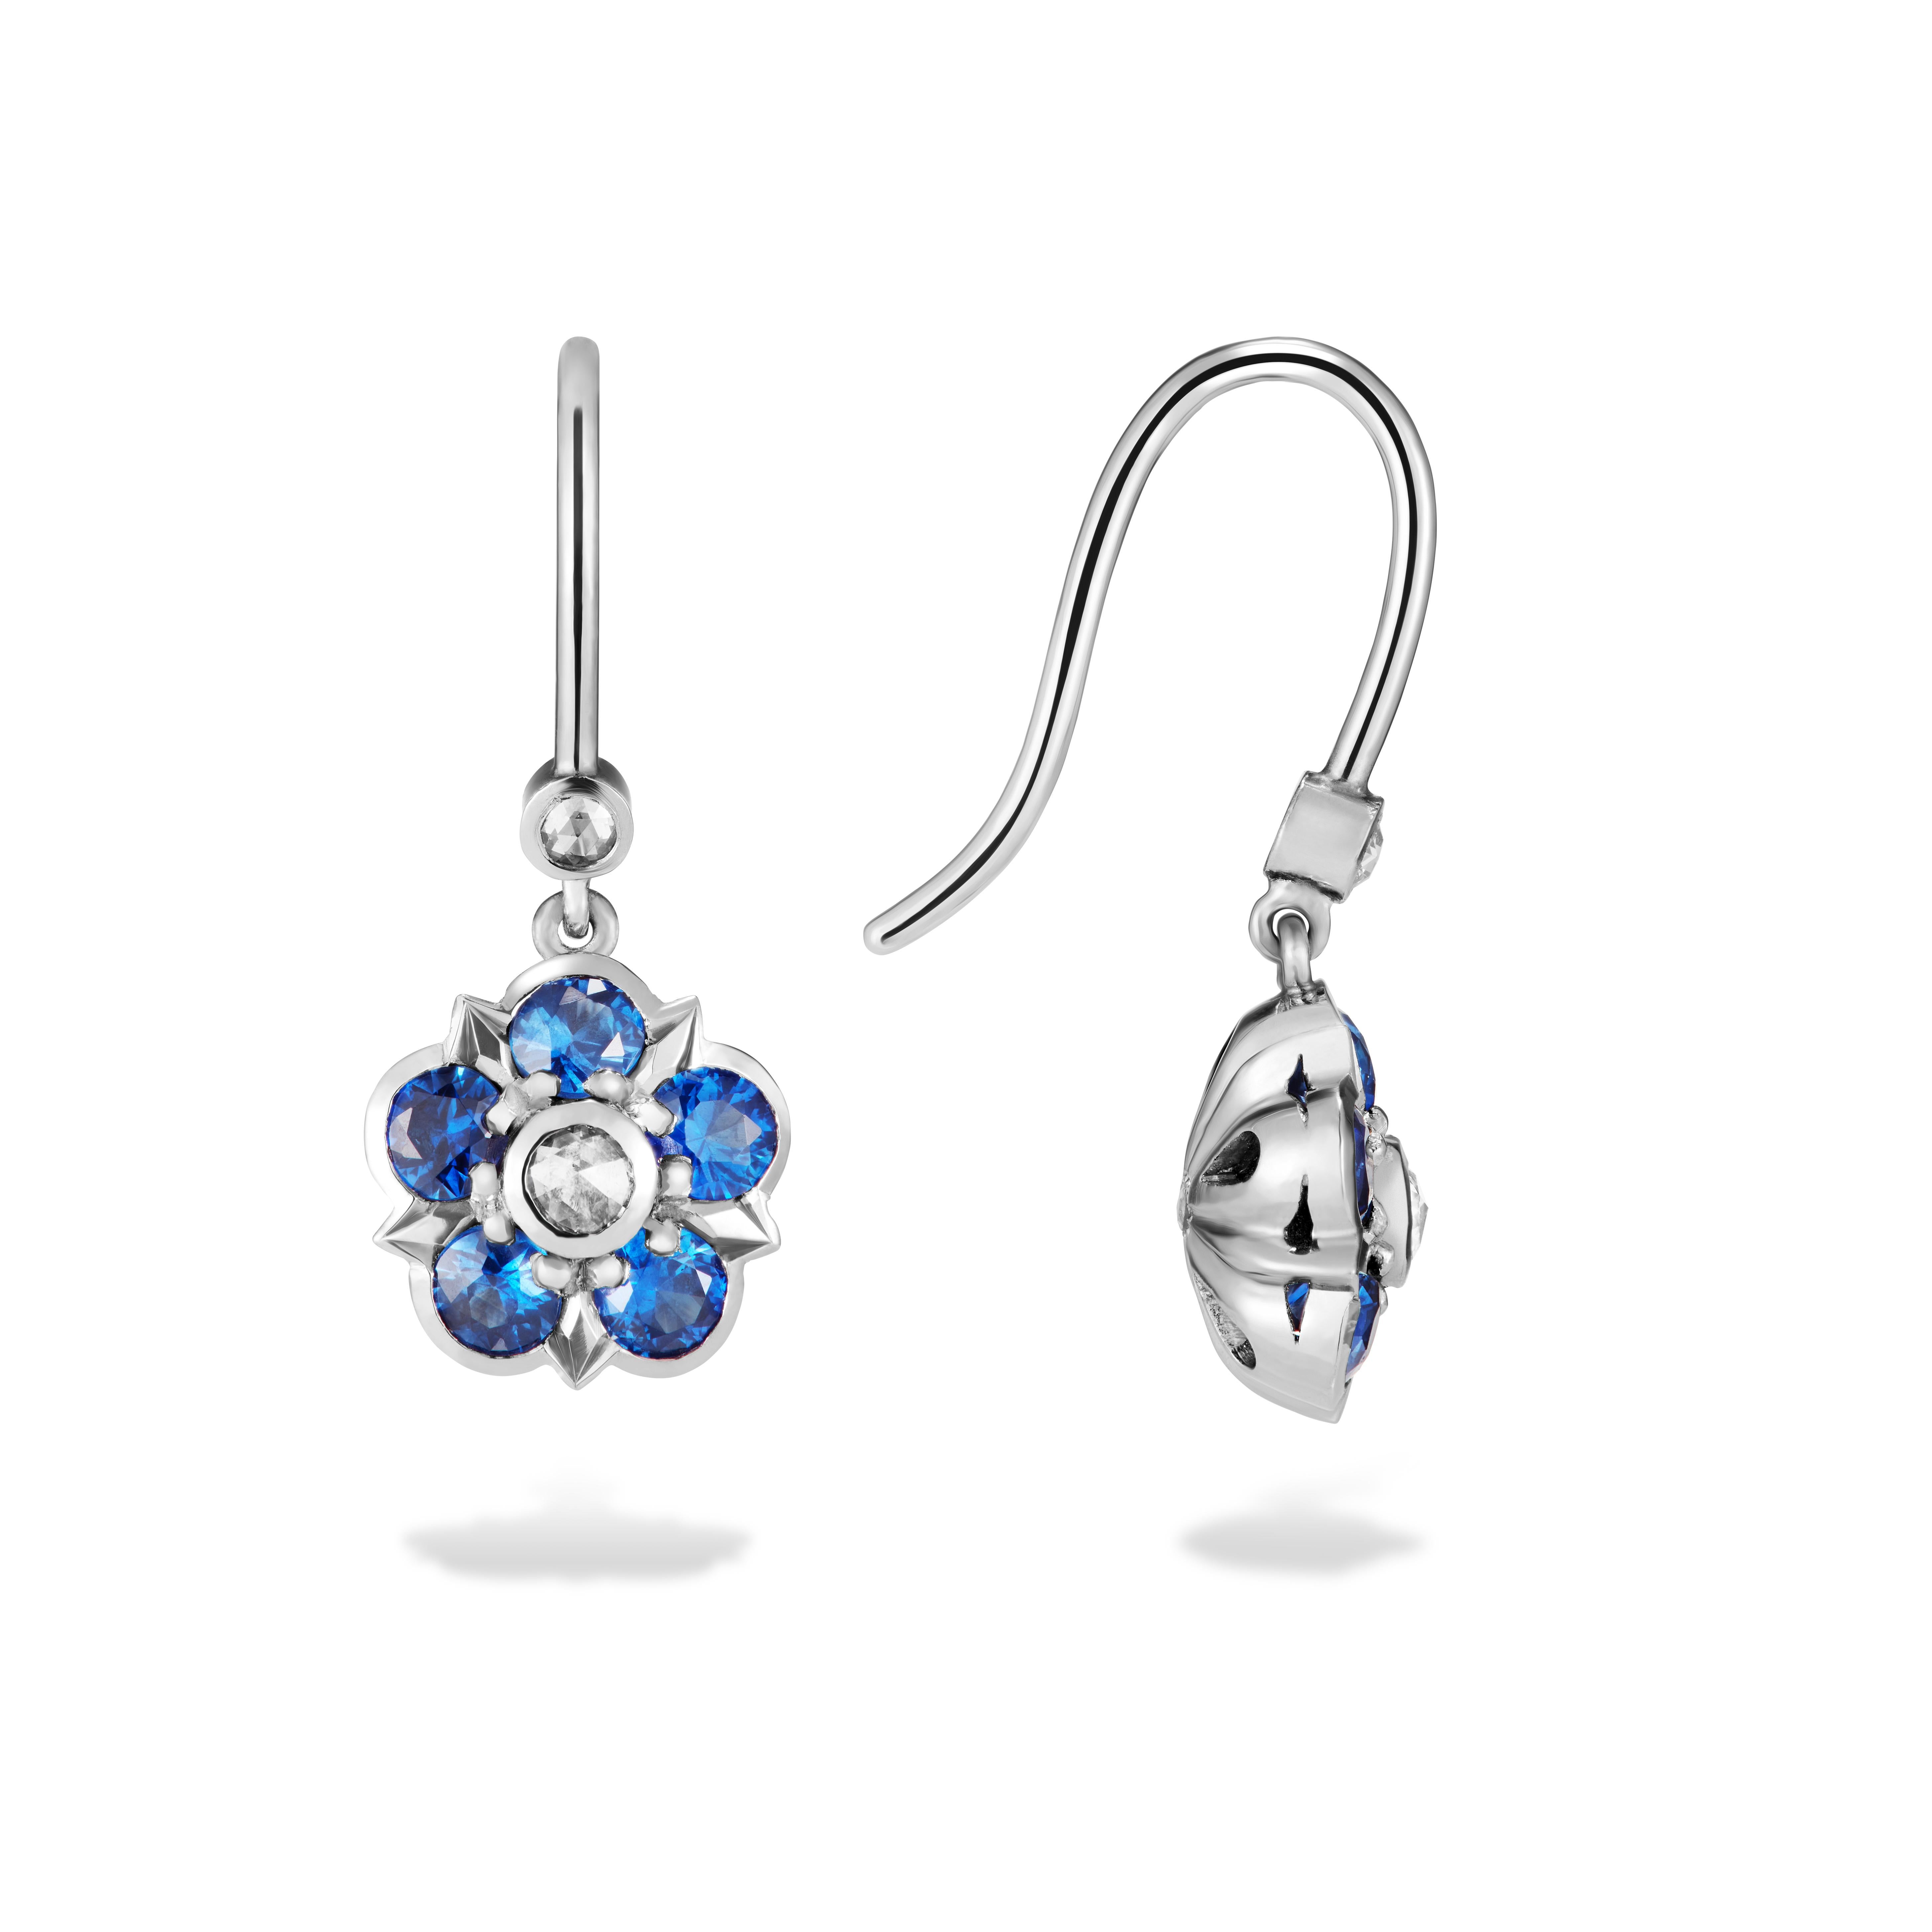 Diese wunderschönen Ohrringe mit Saphiren und Diamanten im Rosenschliff zeigen klassische Saphire, die einen funkelnden Diamanten im Rosenschliff umgeben. Die Ohrringe hängen an Platinhaken mit einem weiteren schönen Diamanten im Rosenschliff. Wie